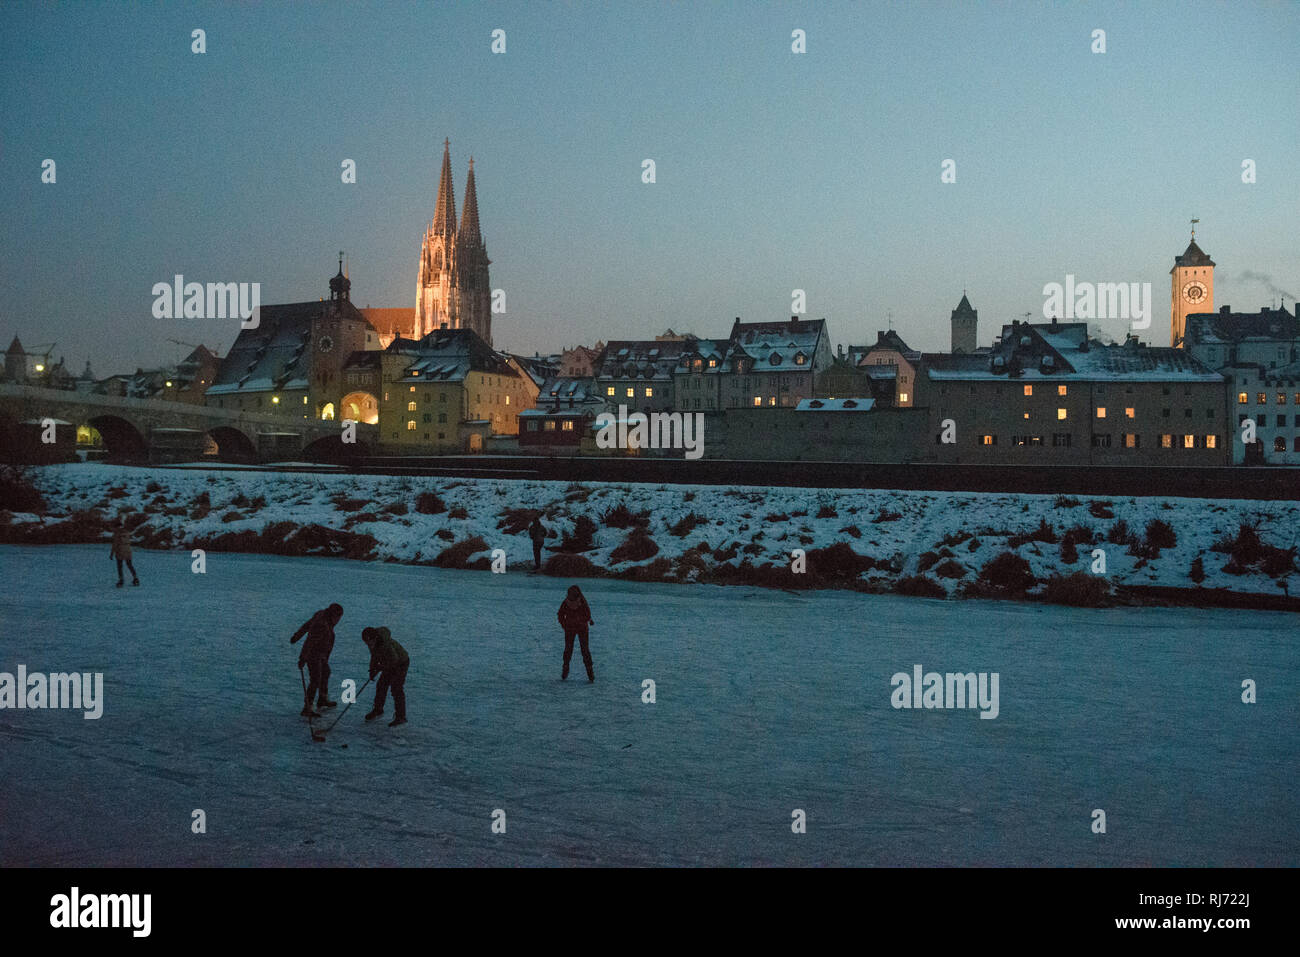 Im Januar 2017 es war so kalt in Deutschland, dass die Donau à Regensburg zugefroren, sodass man ist darauf Schlittschuhlaufen konnte. Banque D'Images